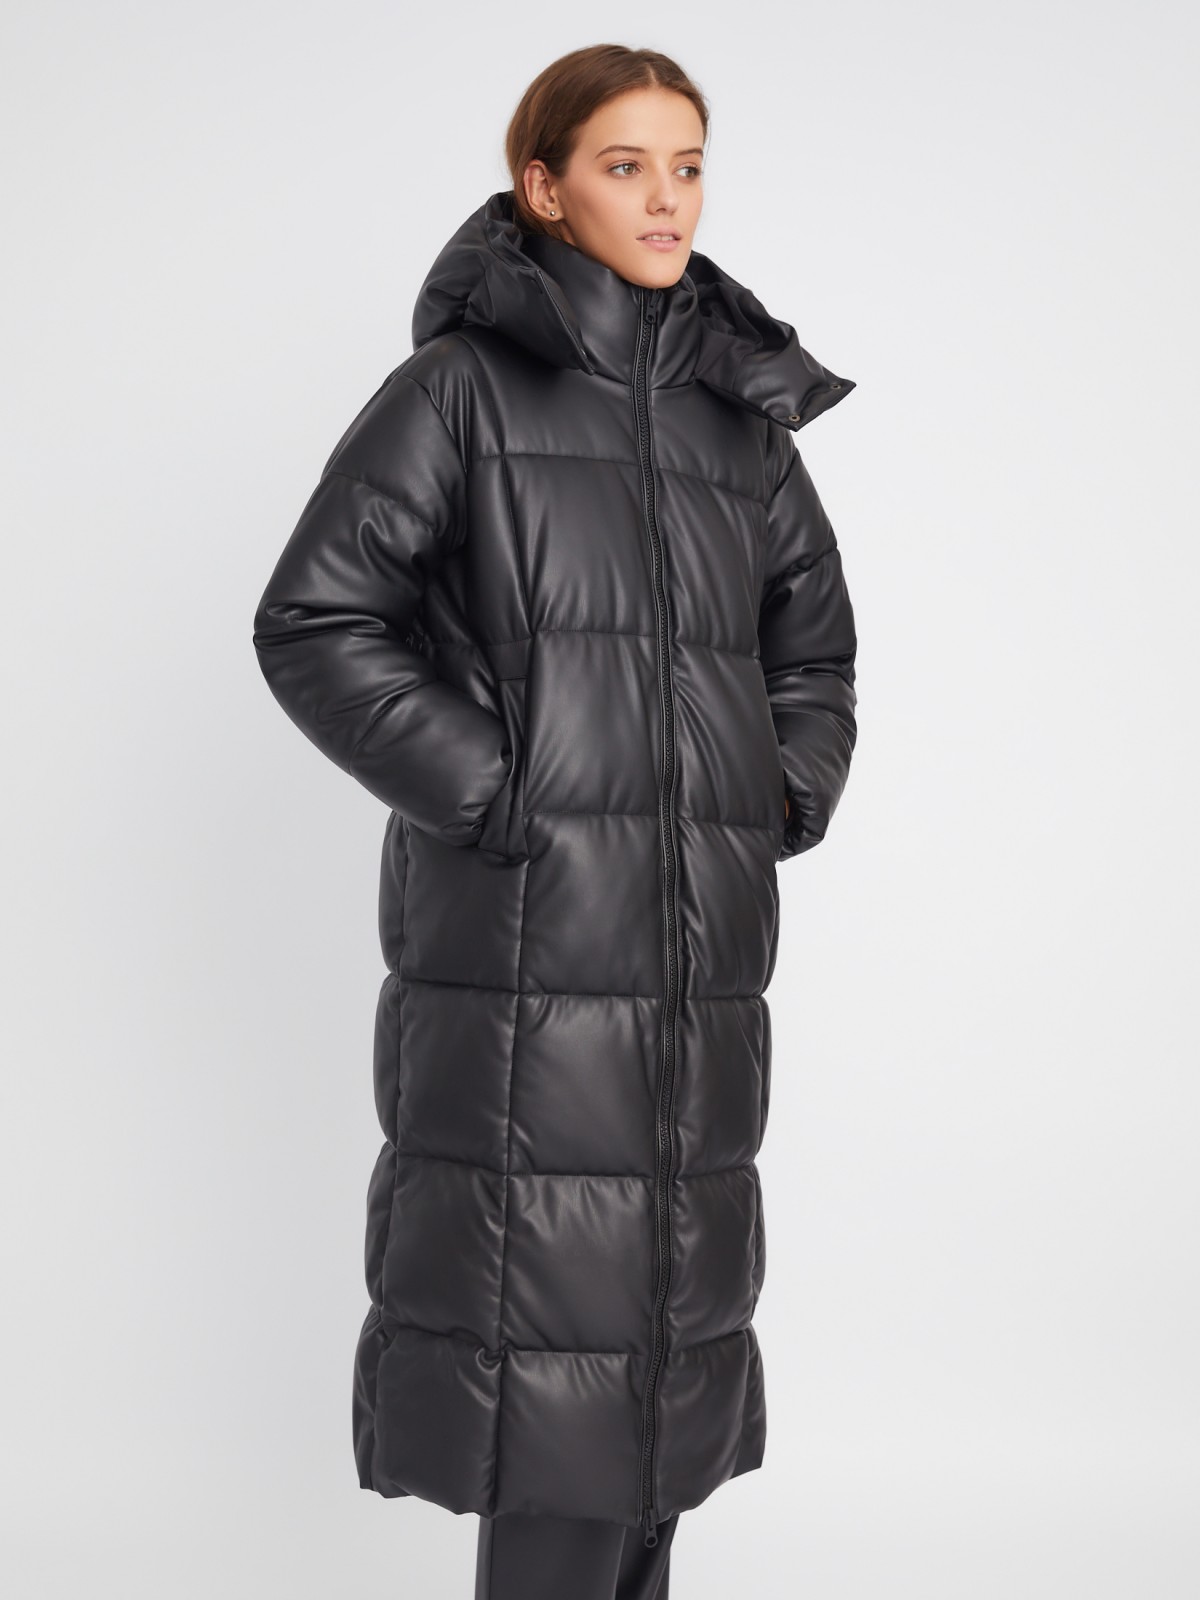 Тёплая стёганая куртка-пальто из экокожи с капюшоном и двойным воротником